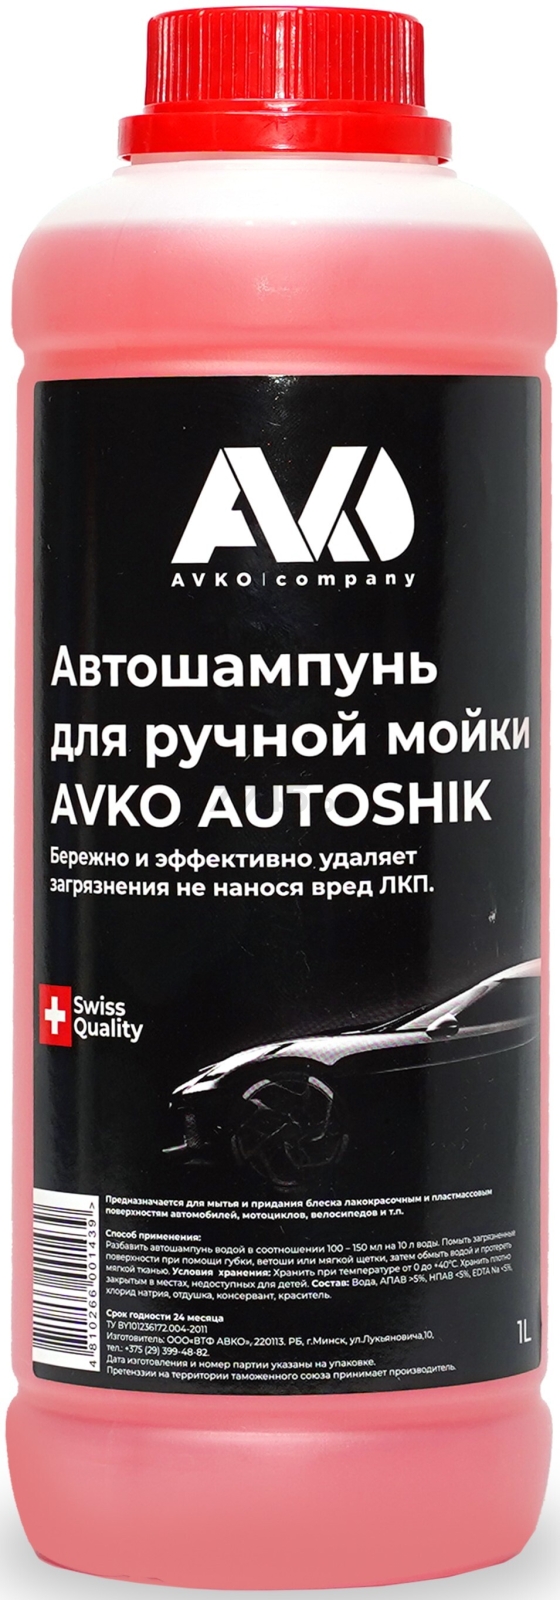 Автошампунь для ручной мойки AVKO Autoshik 1 л